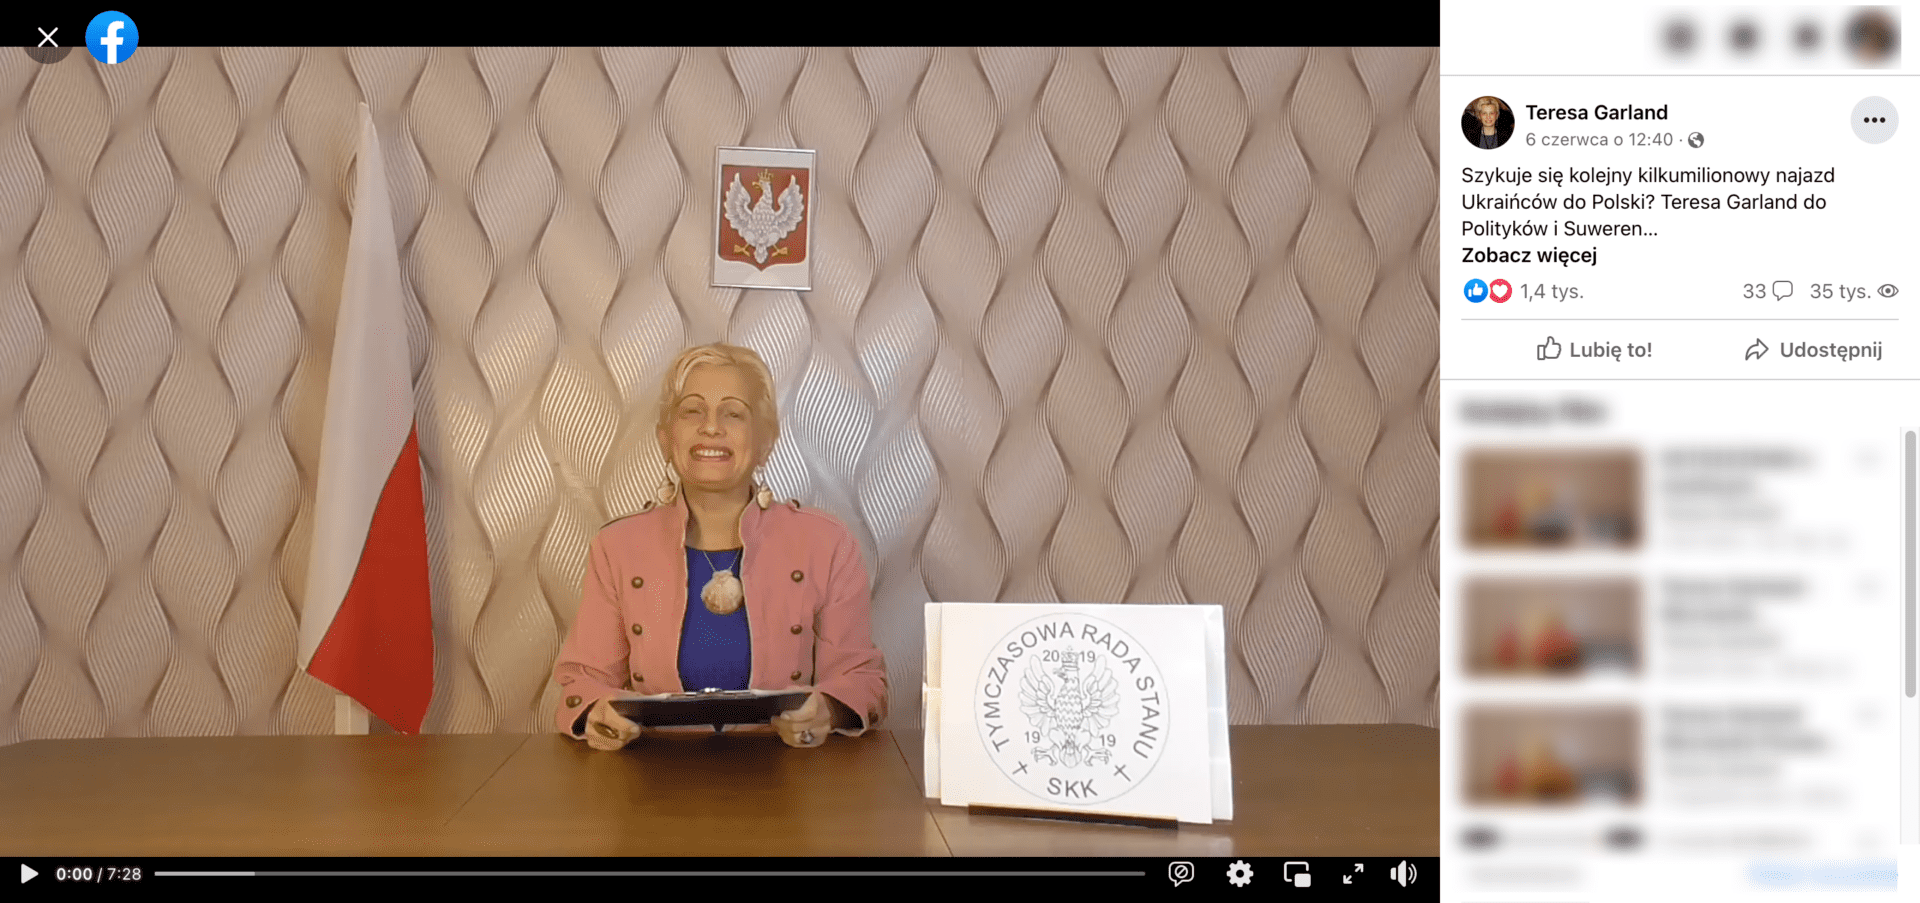 Zrzut ekranu posta, w którym udostępniono omawiane nagranie. Widoczna jest Teresa Garland w niebieskiej bluzce i różowej marynarce. Za nią wisi flaga polski, a przed nią napis o treści: „tymczasowa rada stanu”.